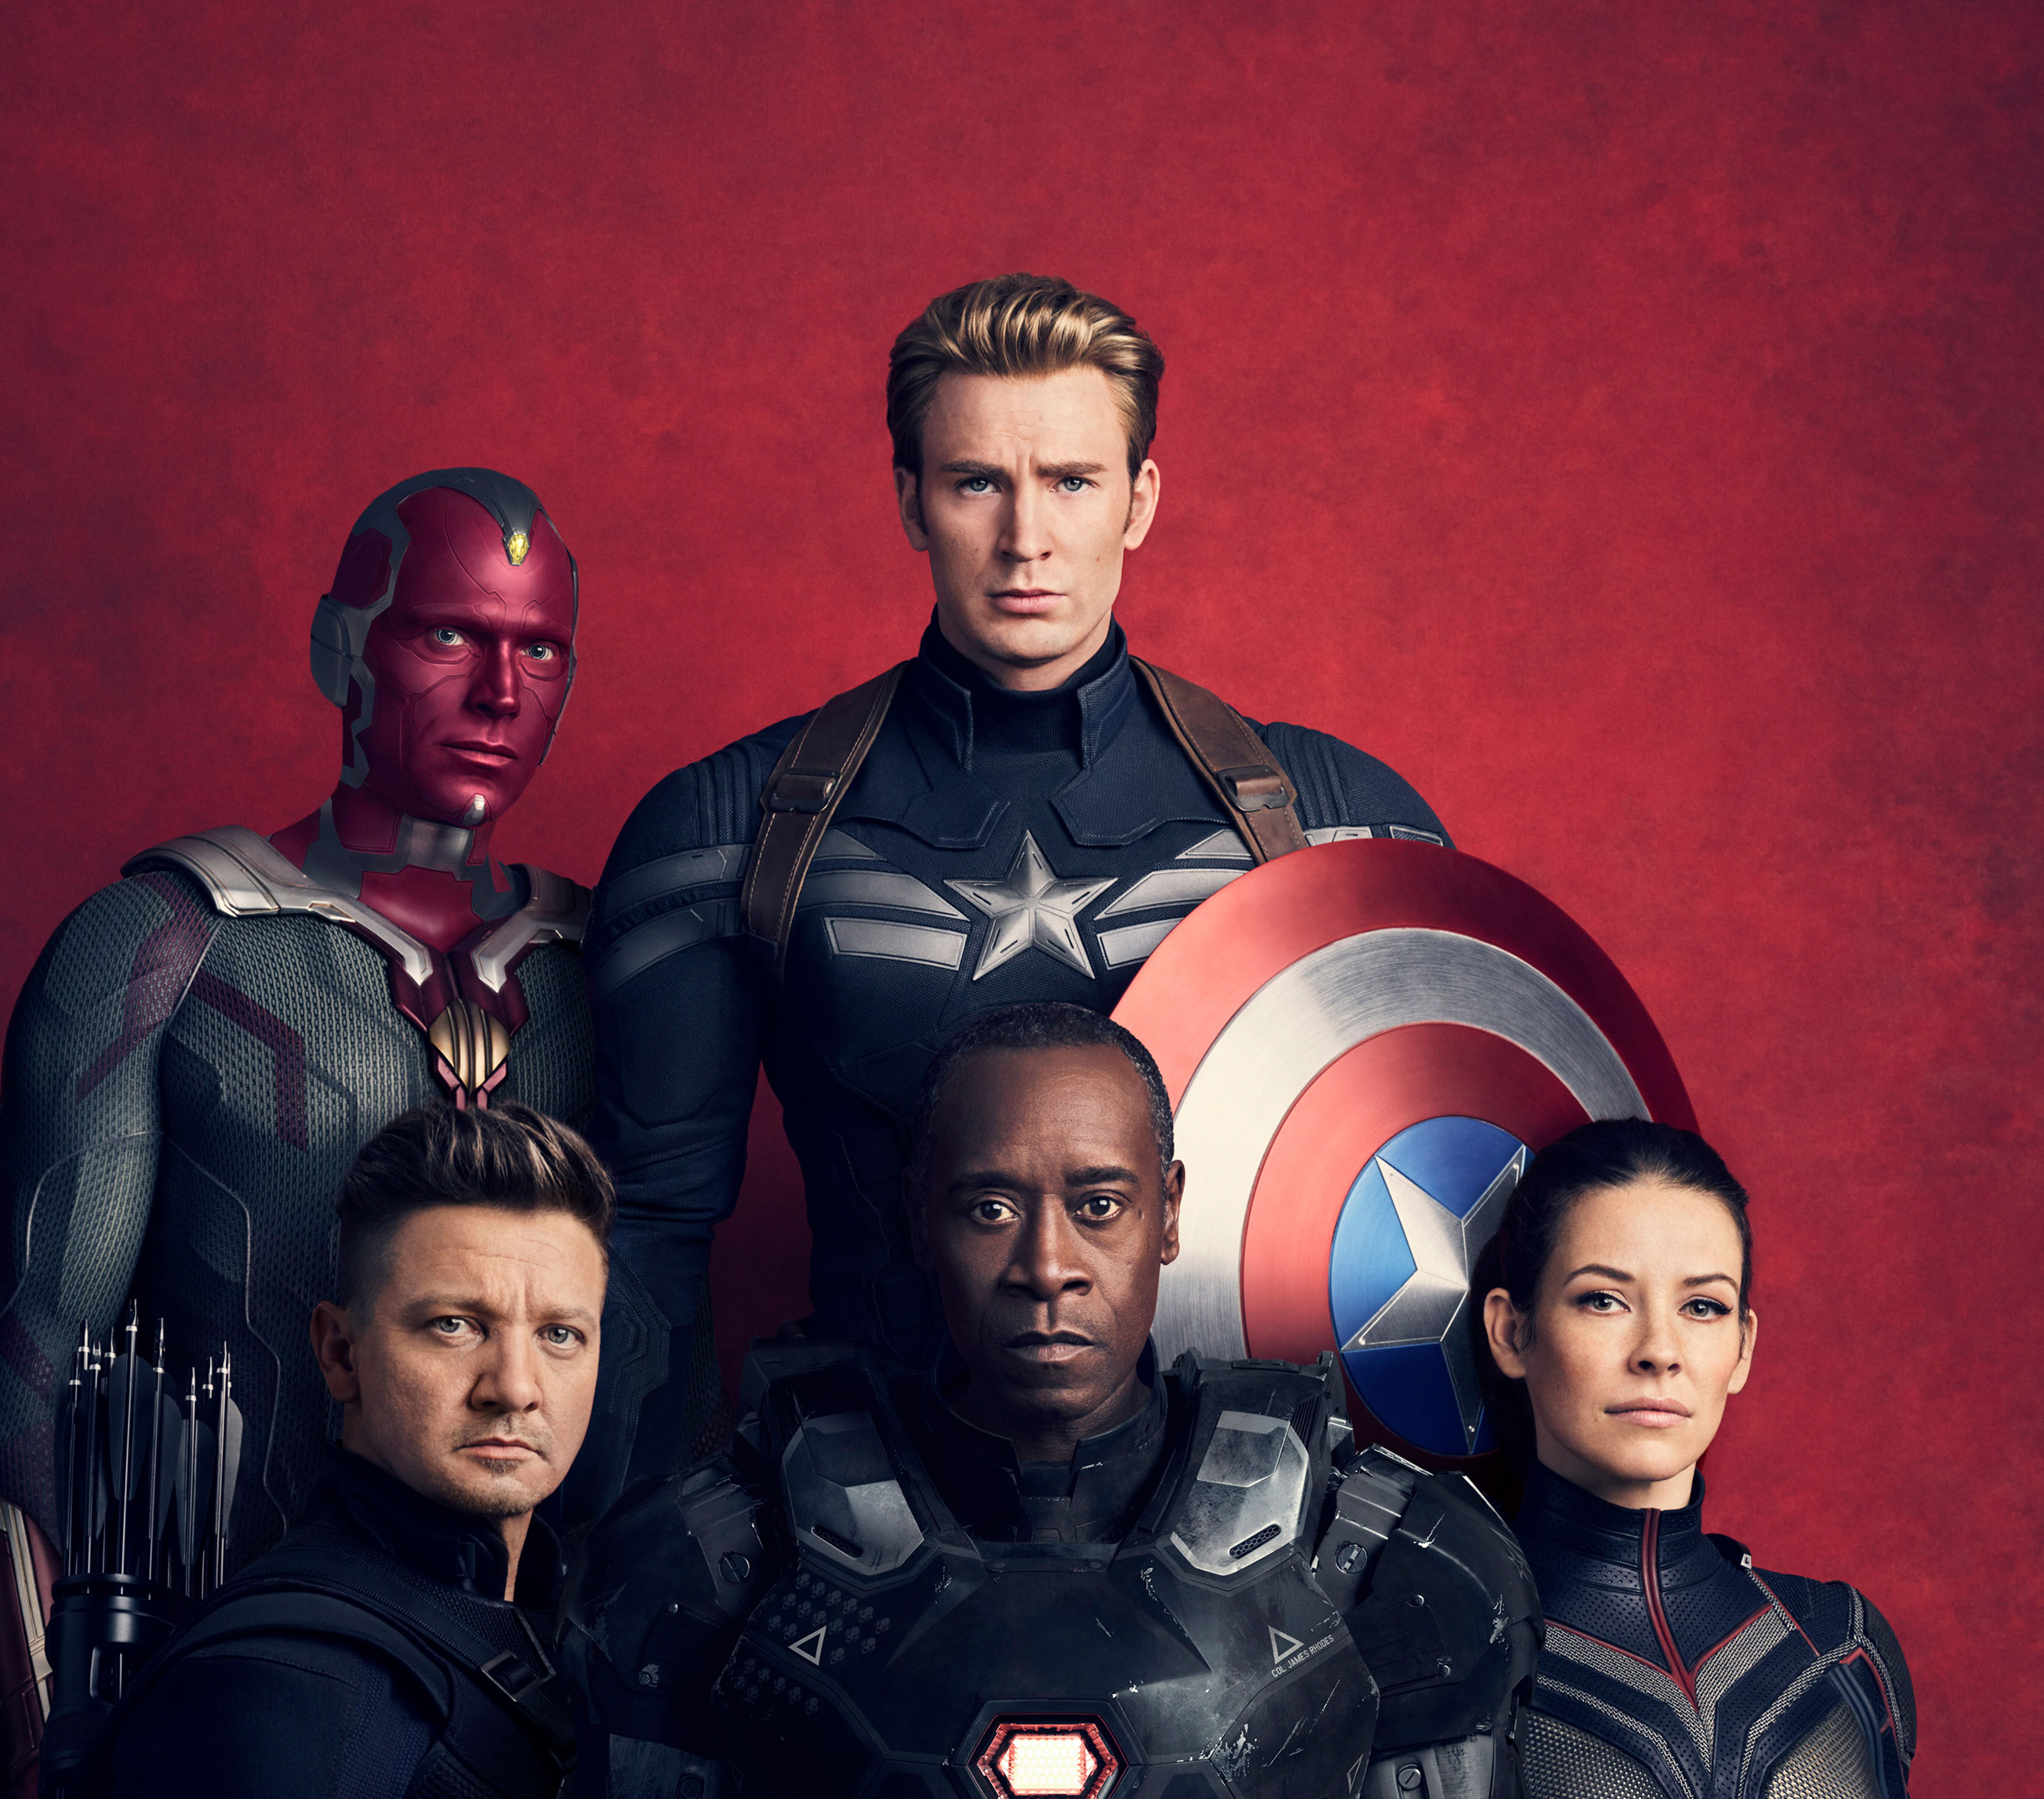 Avengers poster, Avengers: Infinity War, Vision, Captain America